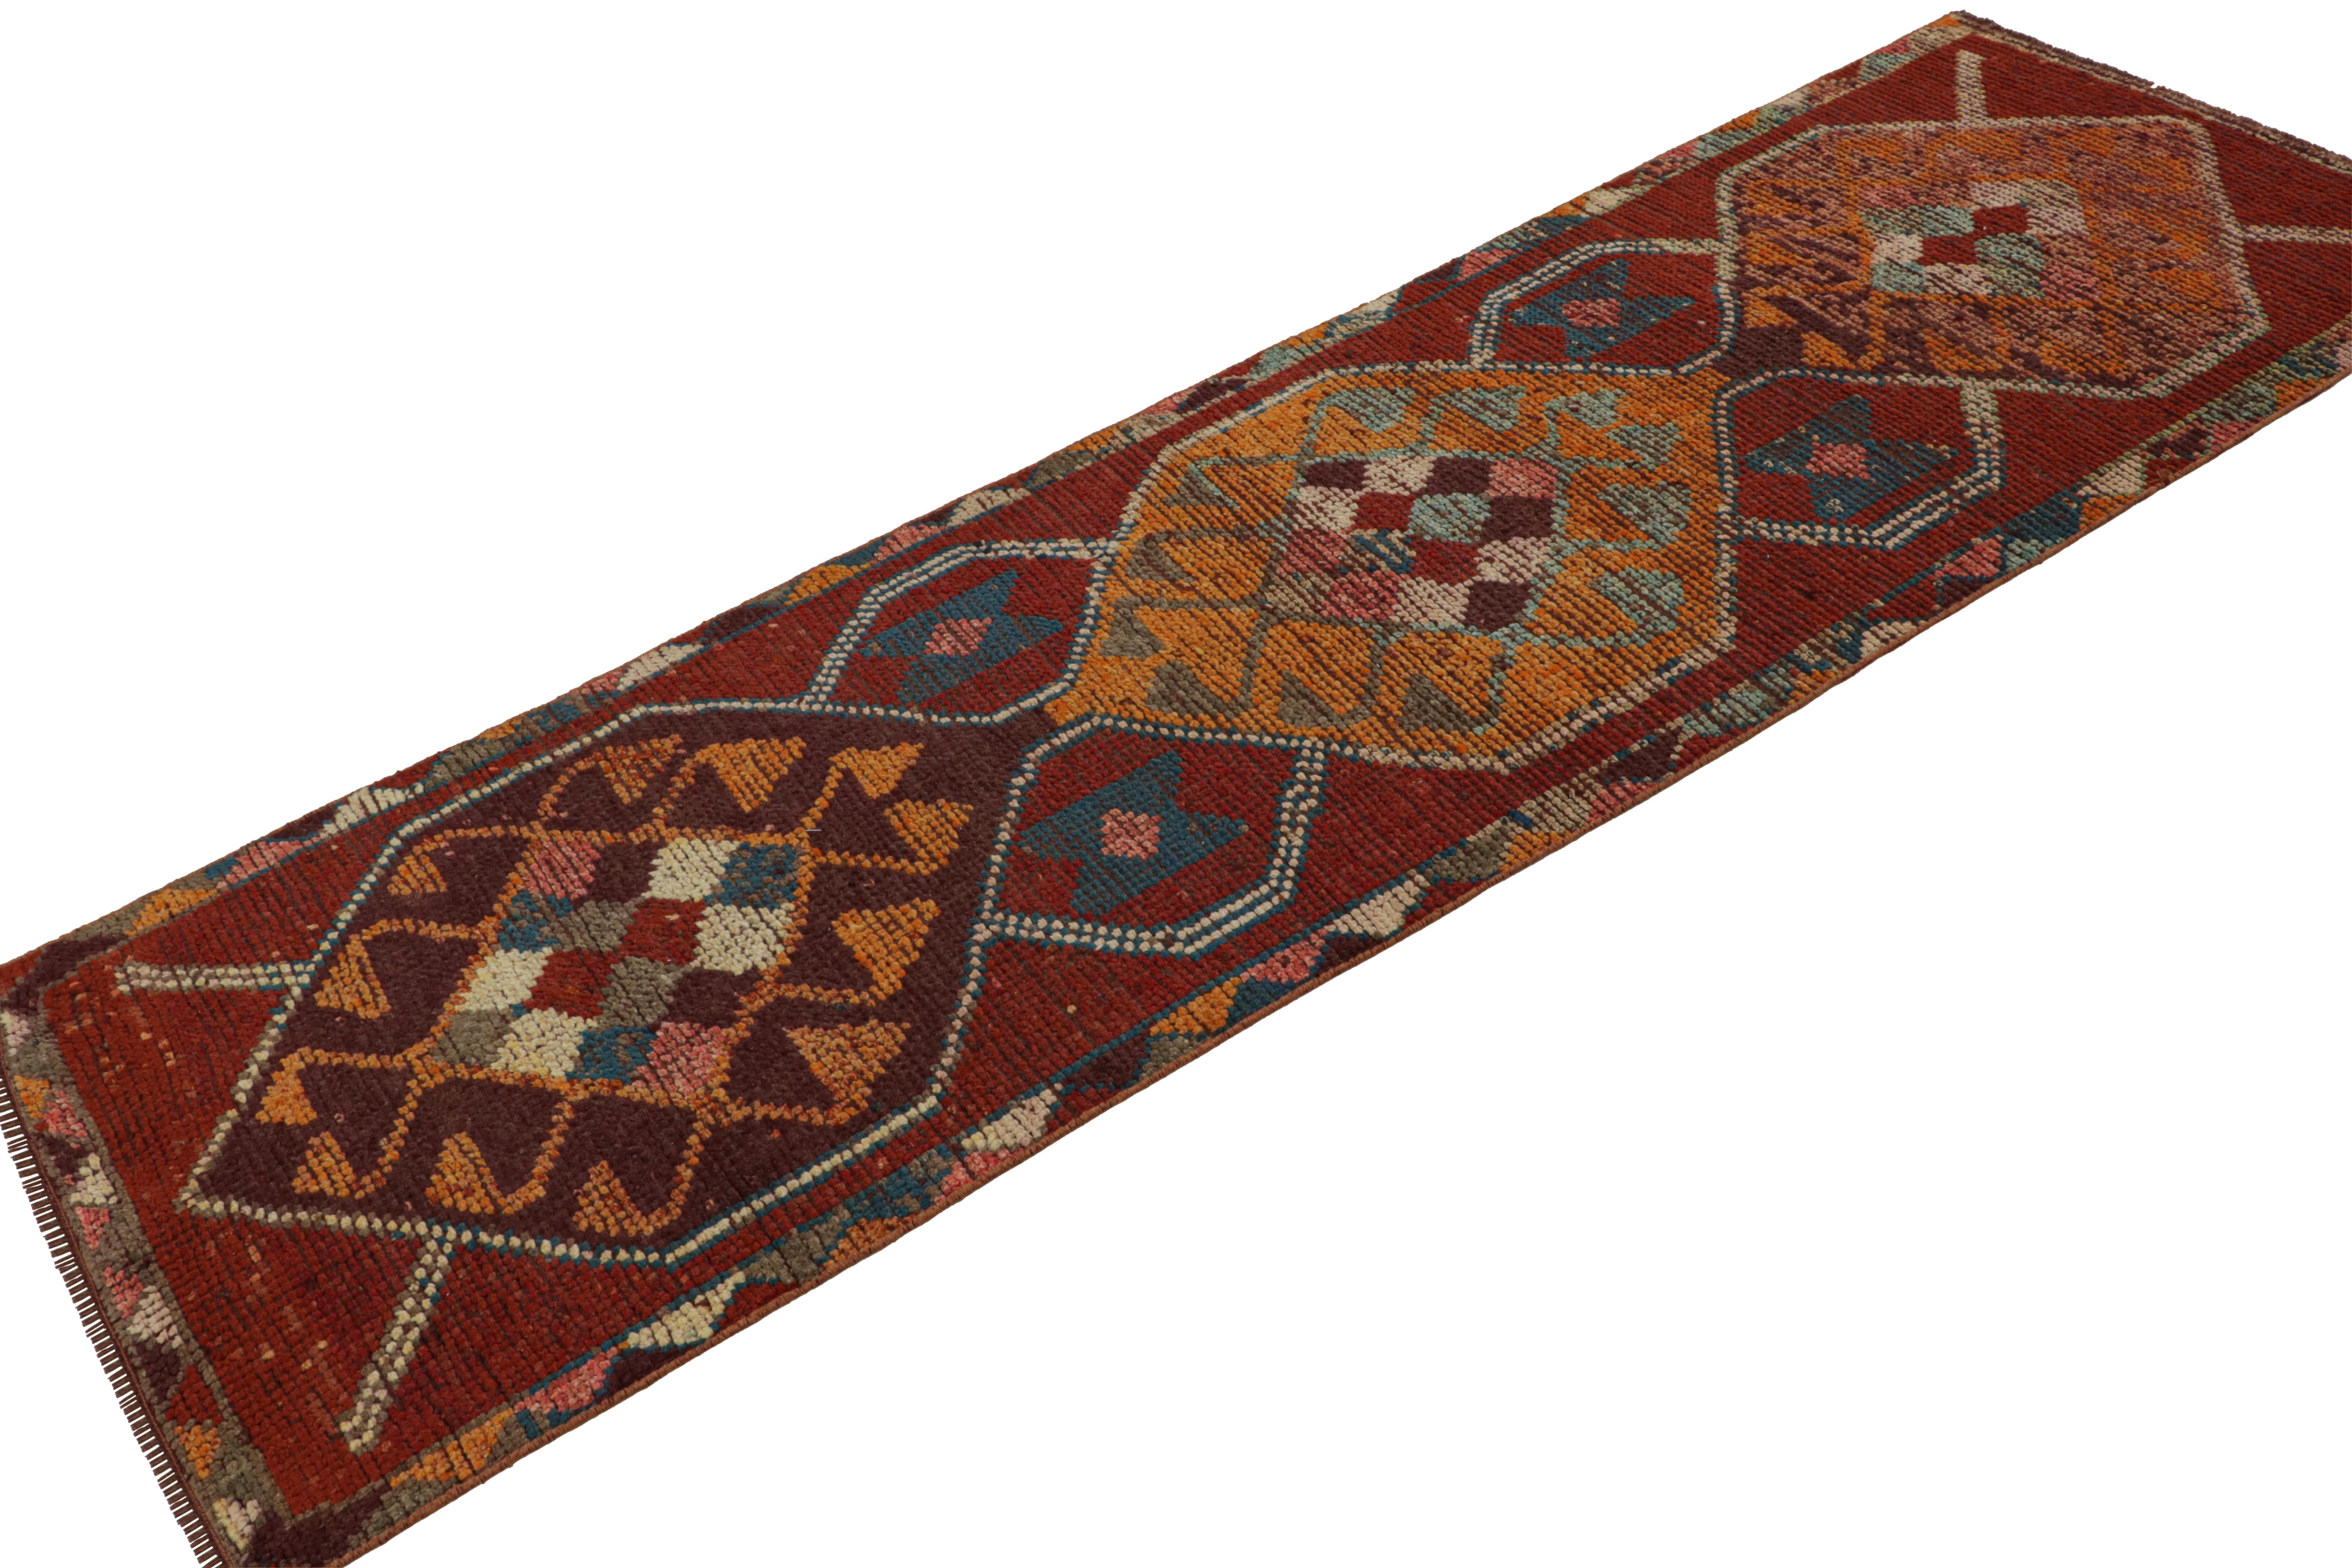 Noué à la main en laine, ce tapis de course Oushak turc vintage 3x9 de couleur rouge présente un médaillon central et des motifs géométriques dans des couleurs particulièrement rares compte tenu de sa provenance du milieu du siècle dernier. 

Sur le